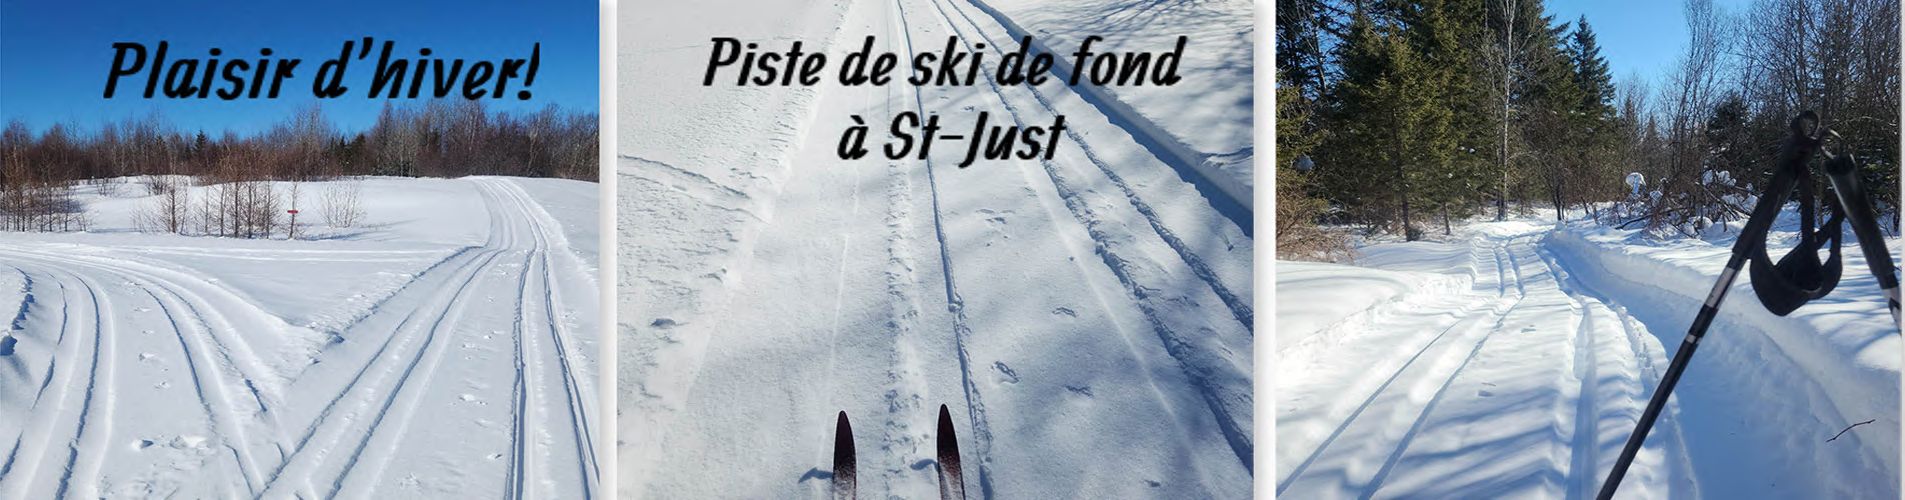 Ski De Fond